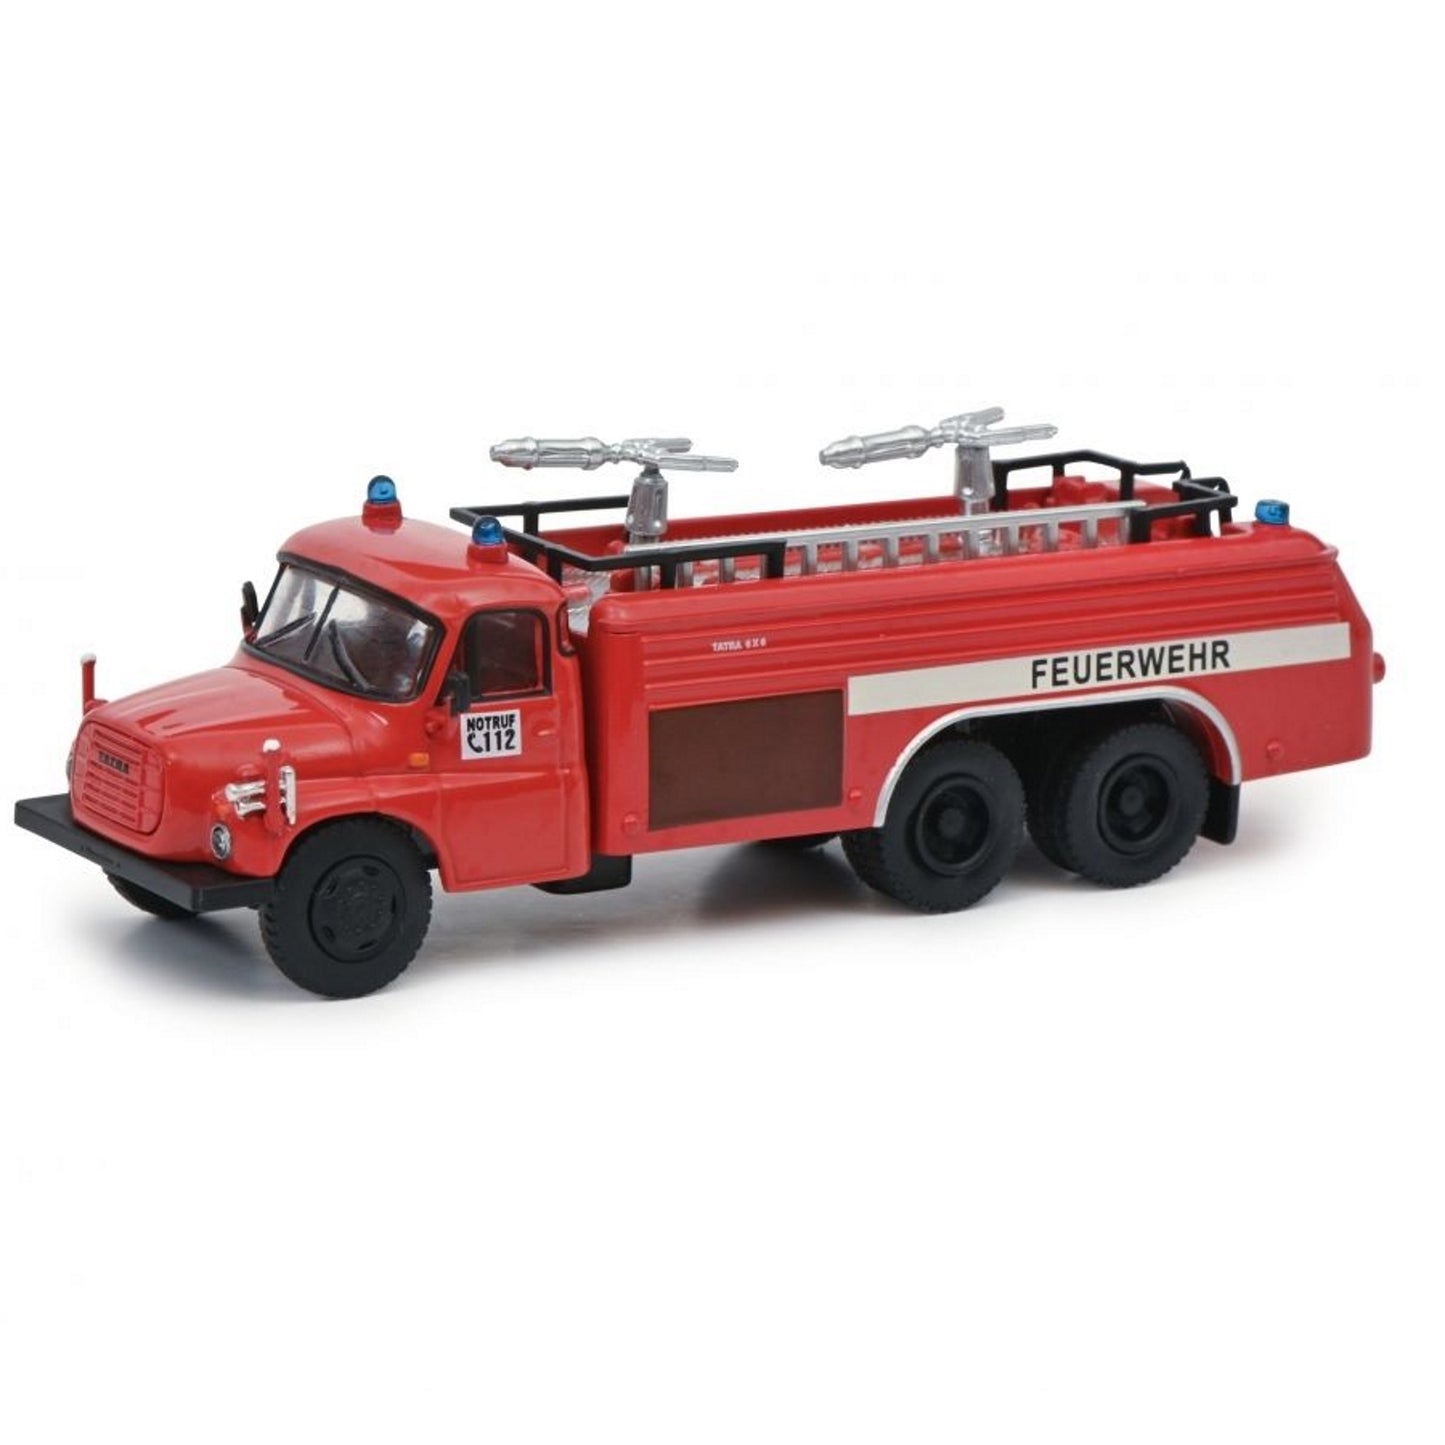 Schuco 452663200 1:87 Red Feuerwehr Tatra T148 Fire Truck Diecast Model